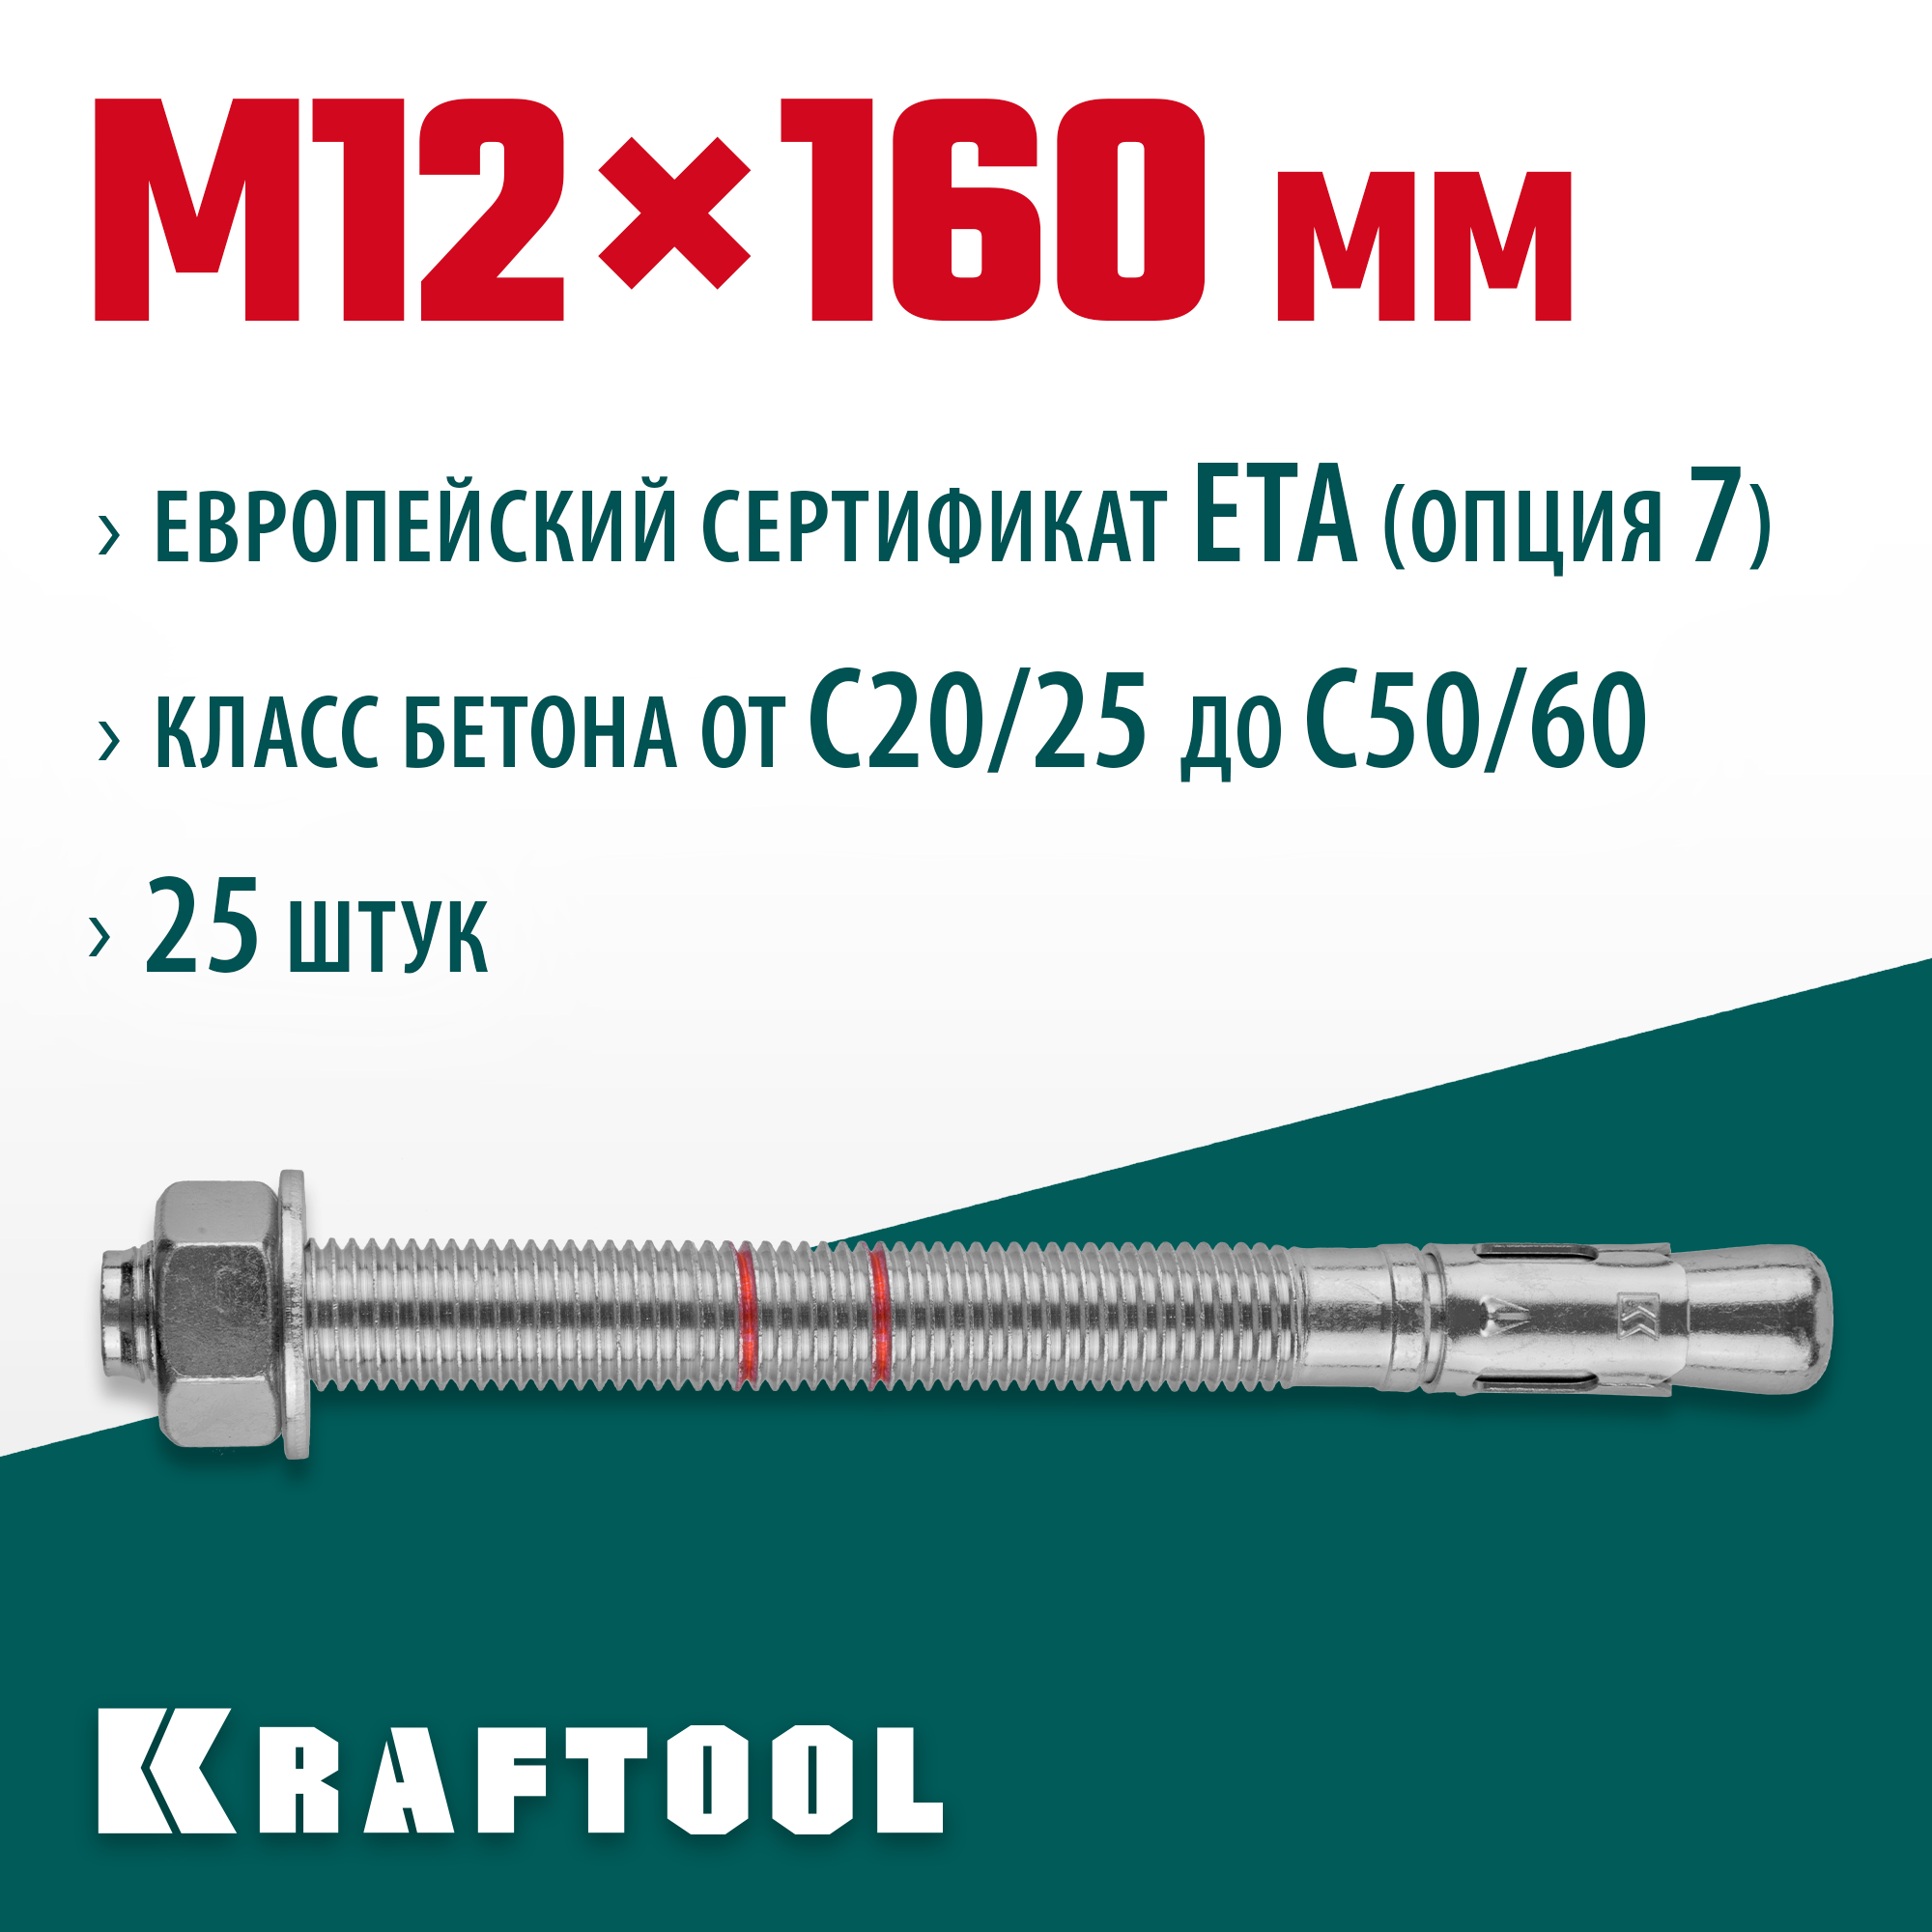 KRAFTOOL М12x160, ETA Опция 7, 25 шт, анкер клиновой 302184-12-160